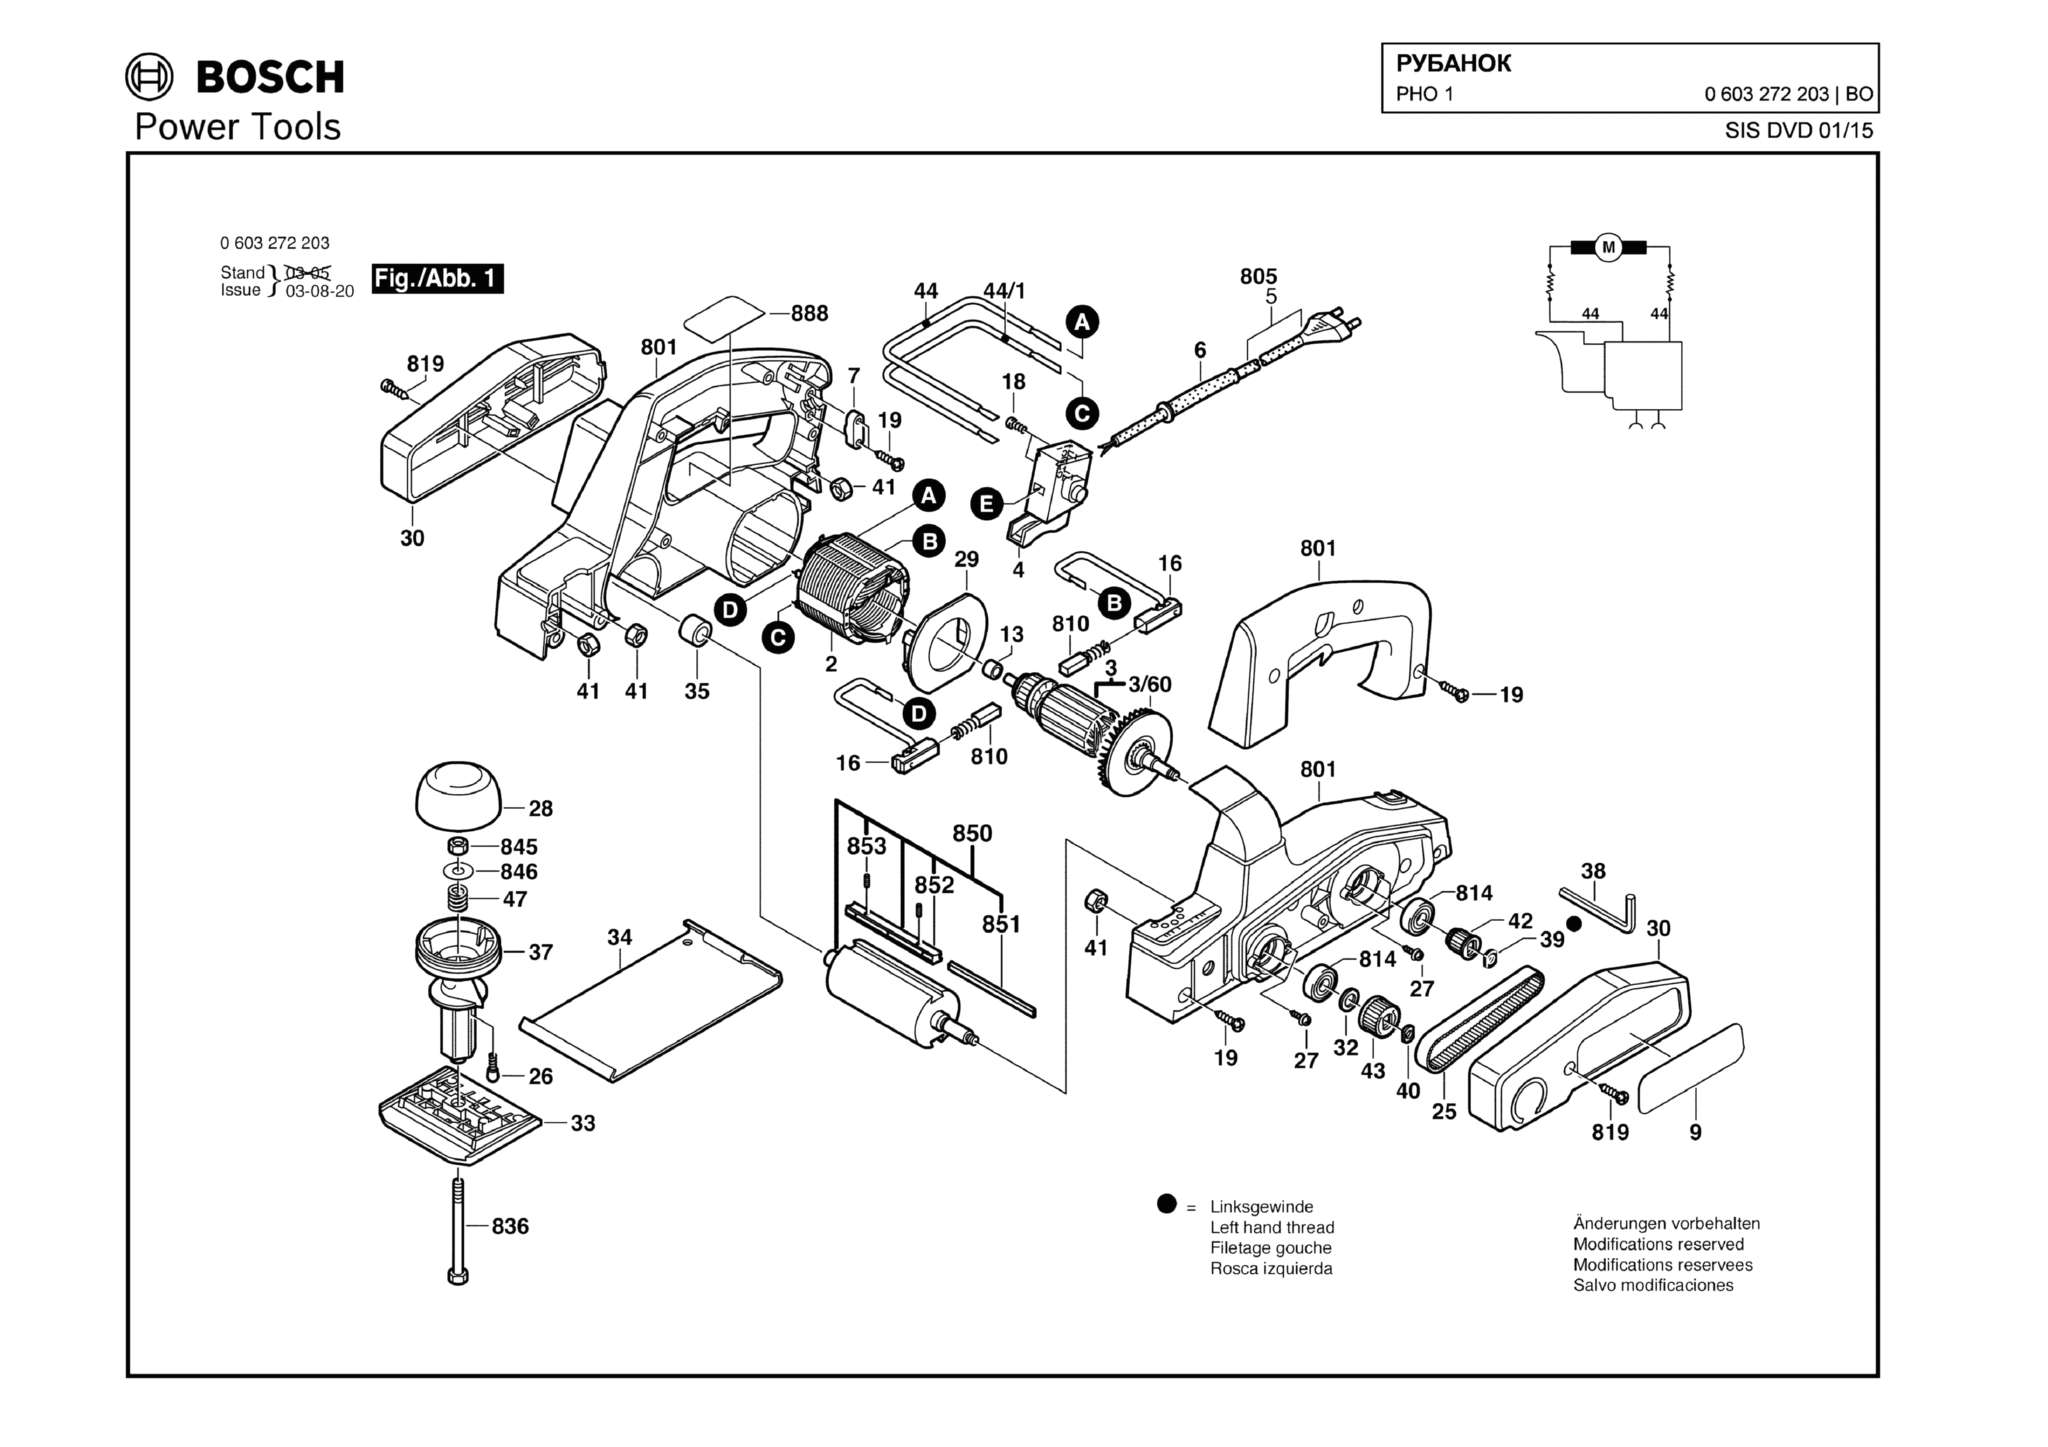 Запчасти, схема и деталировка Bosch PHO 1 (ТИП 0603272203)